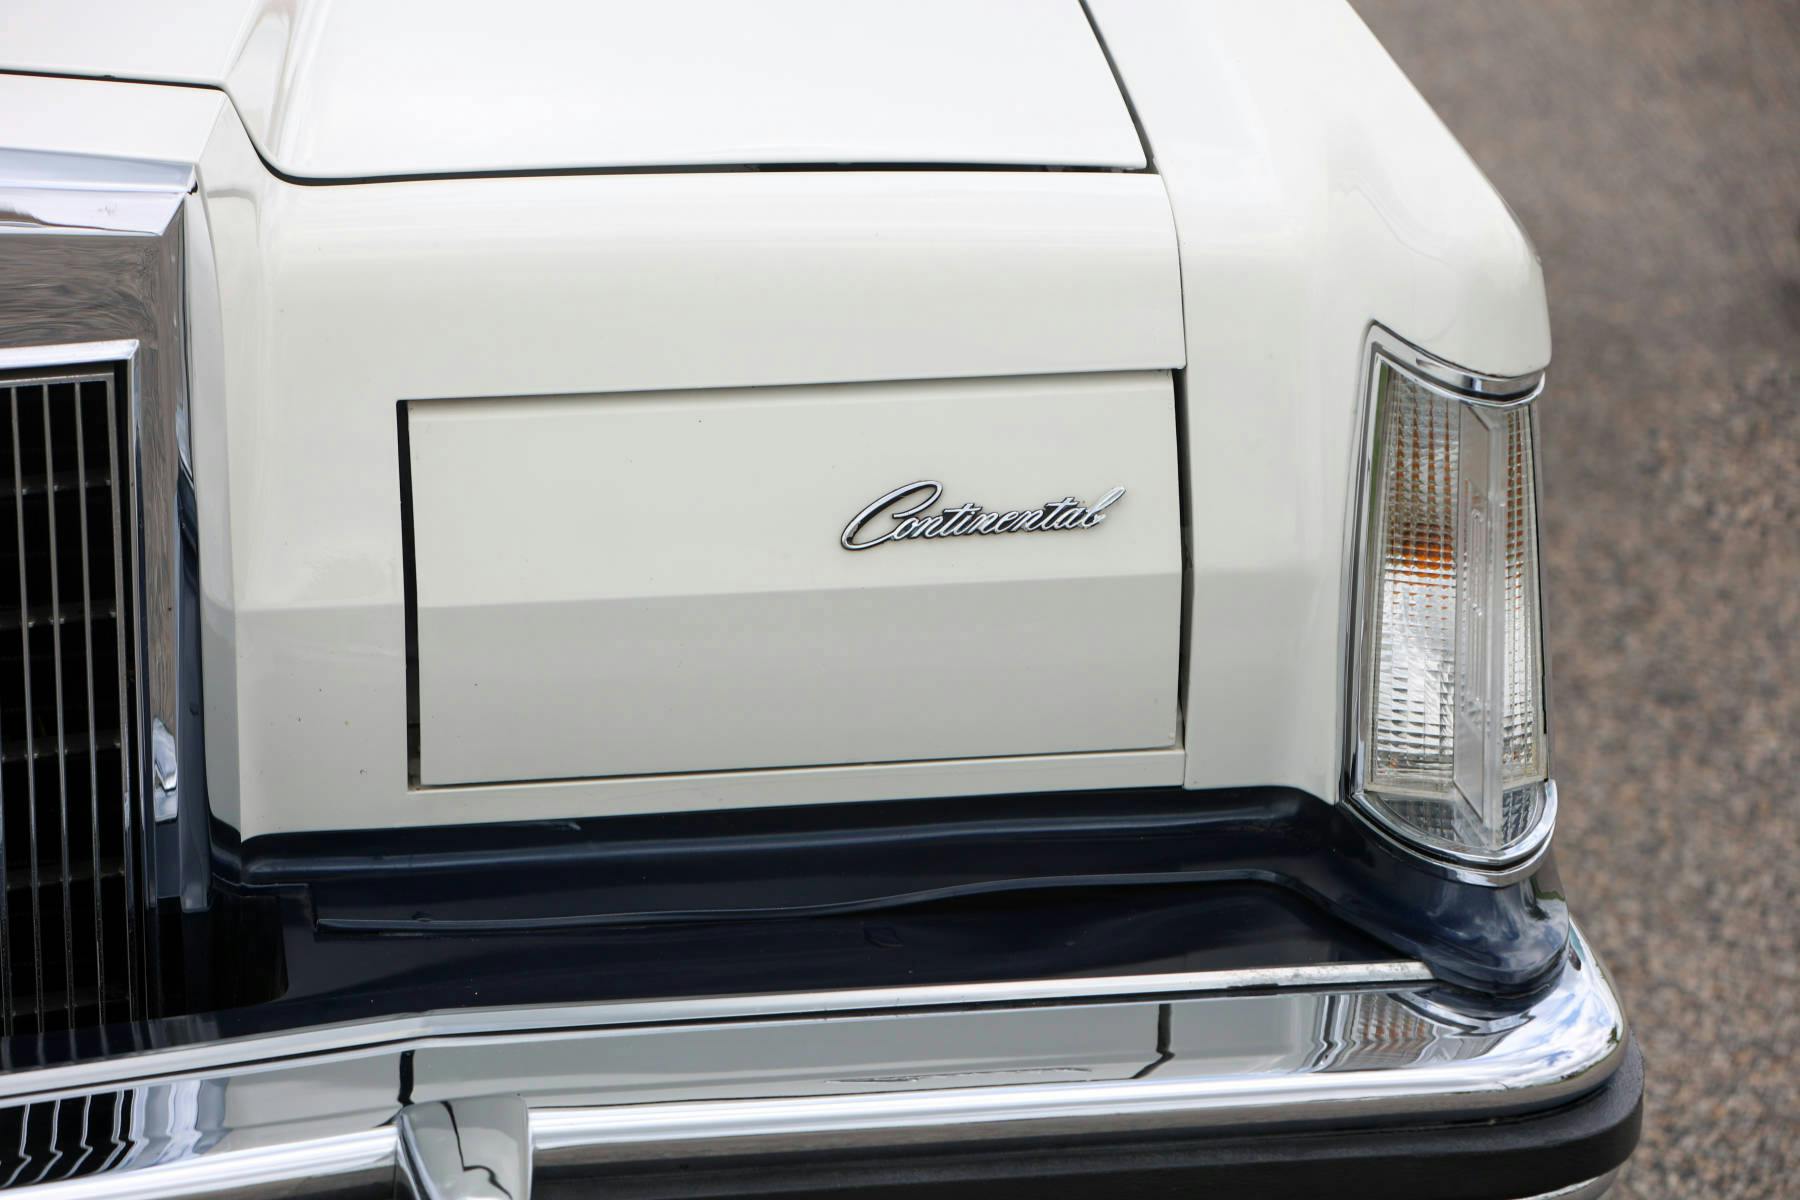 1979-Lincoln-Continental-Mark-V-Bill-Blass-Edition-headlight-detail